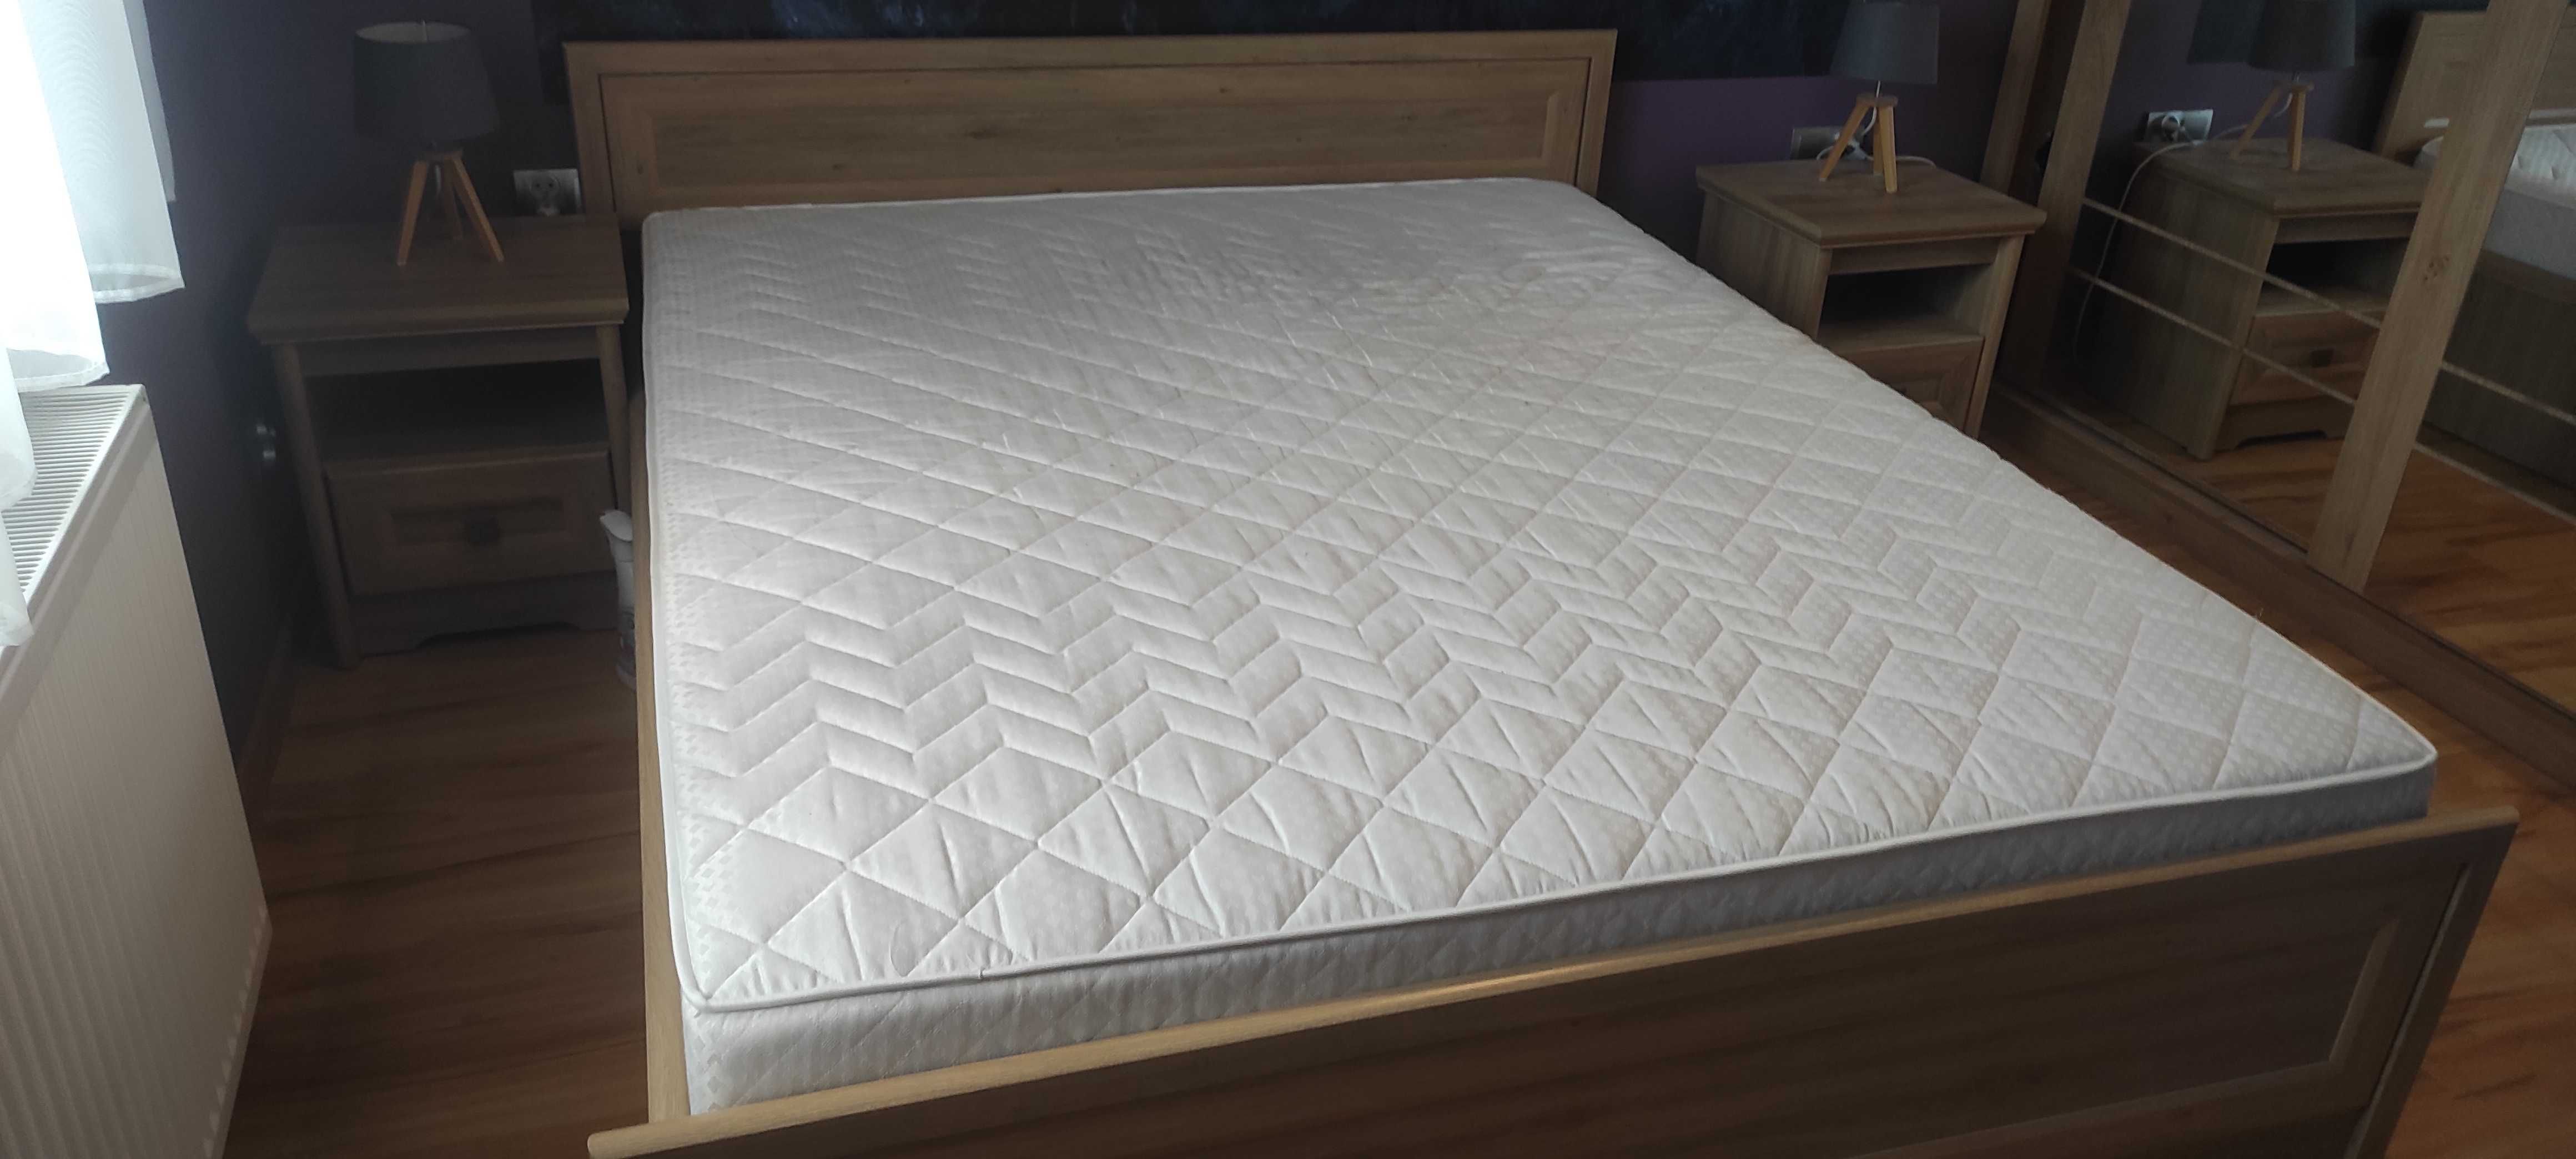 Łóżko do sypialni 160x200 z materacem +2 szafki nocne, mało używane